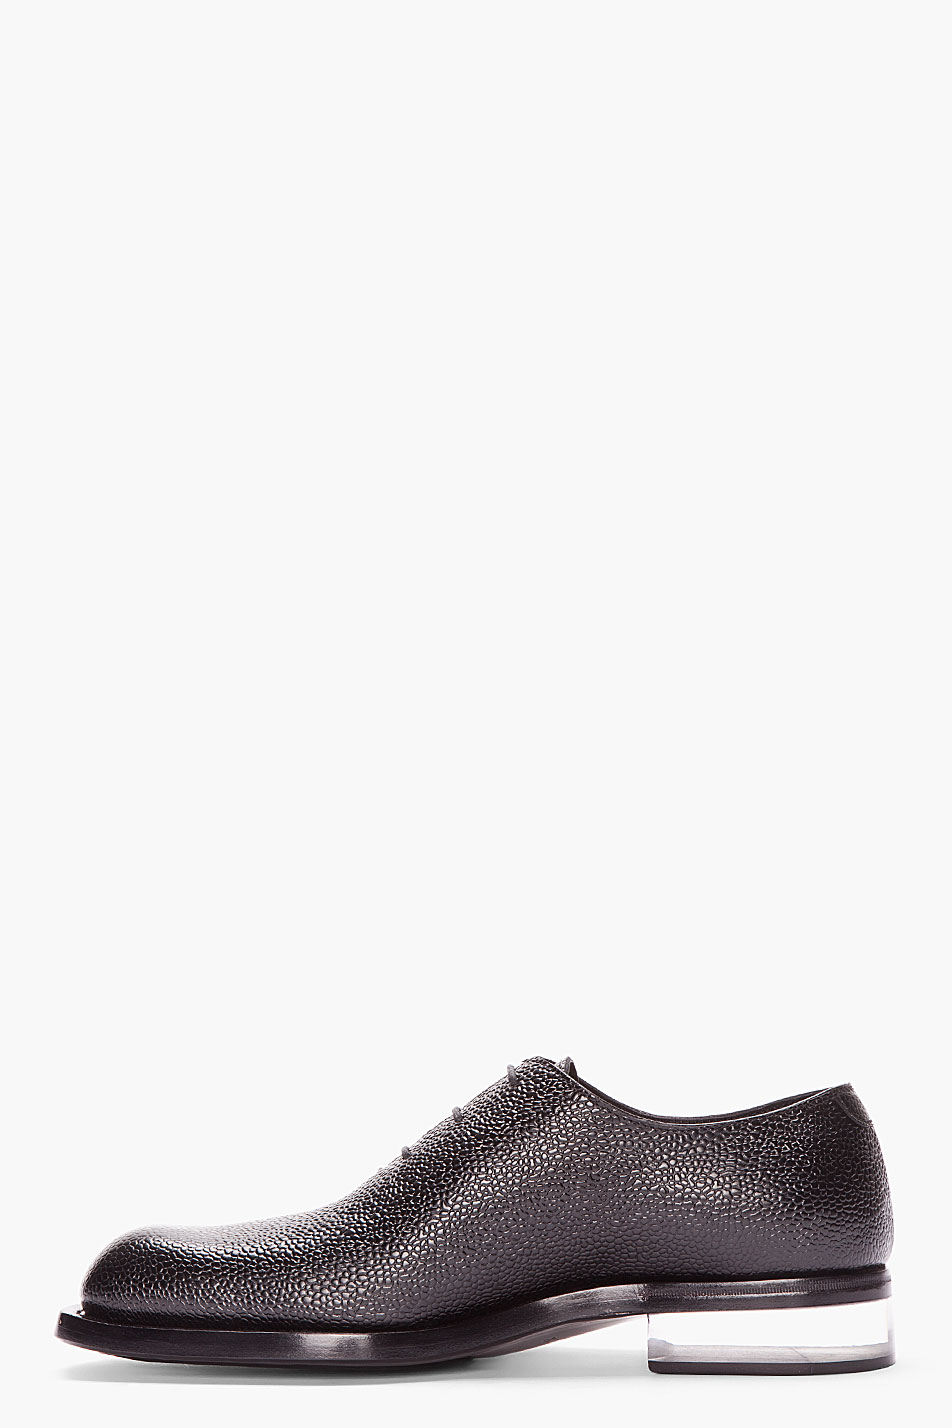 Jil sander Black Leather Transparent Heel Corsair Shoes in Black for ...